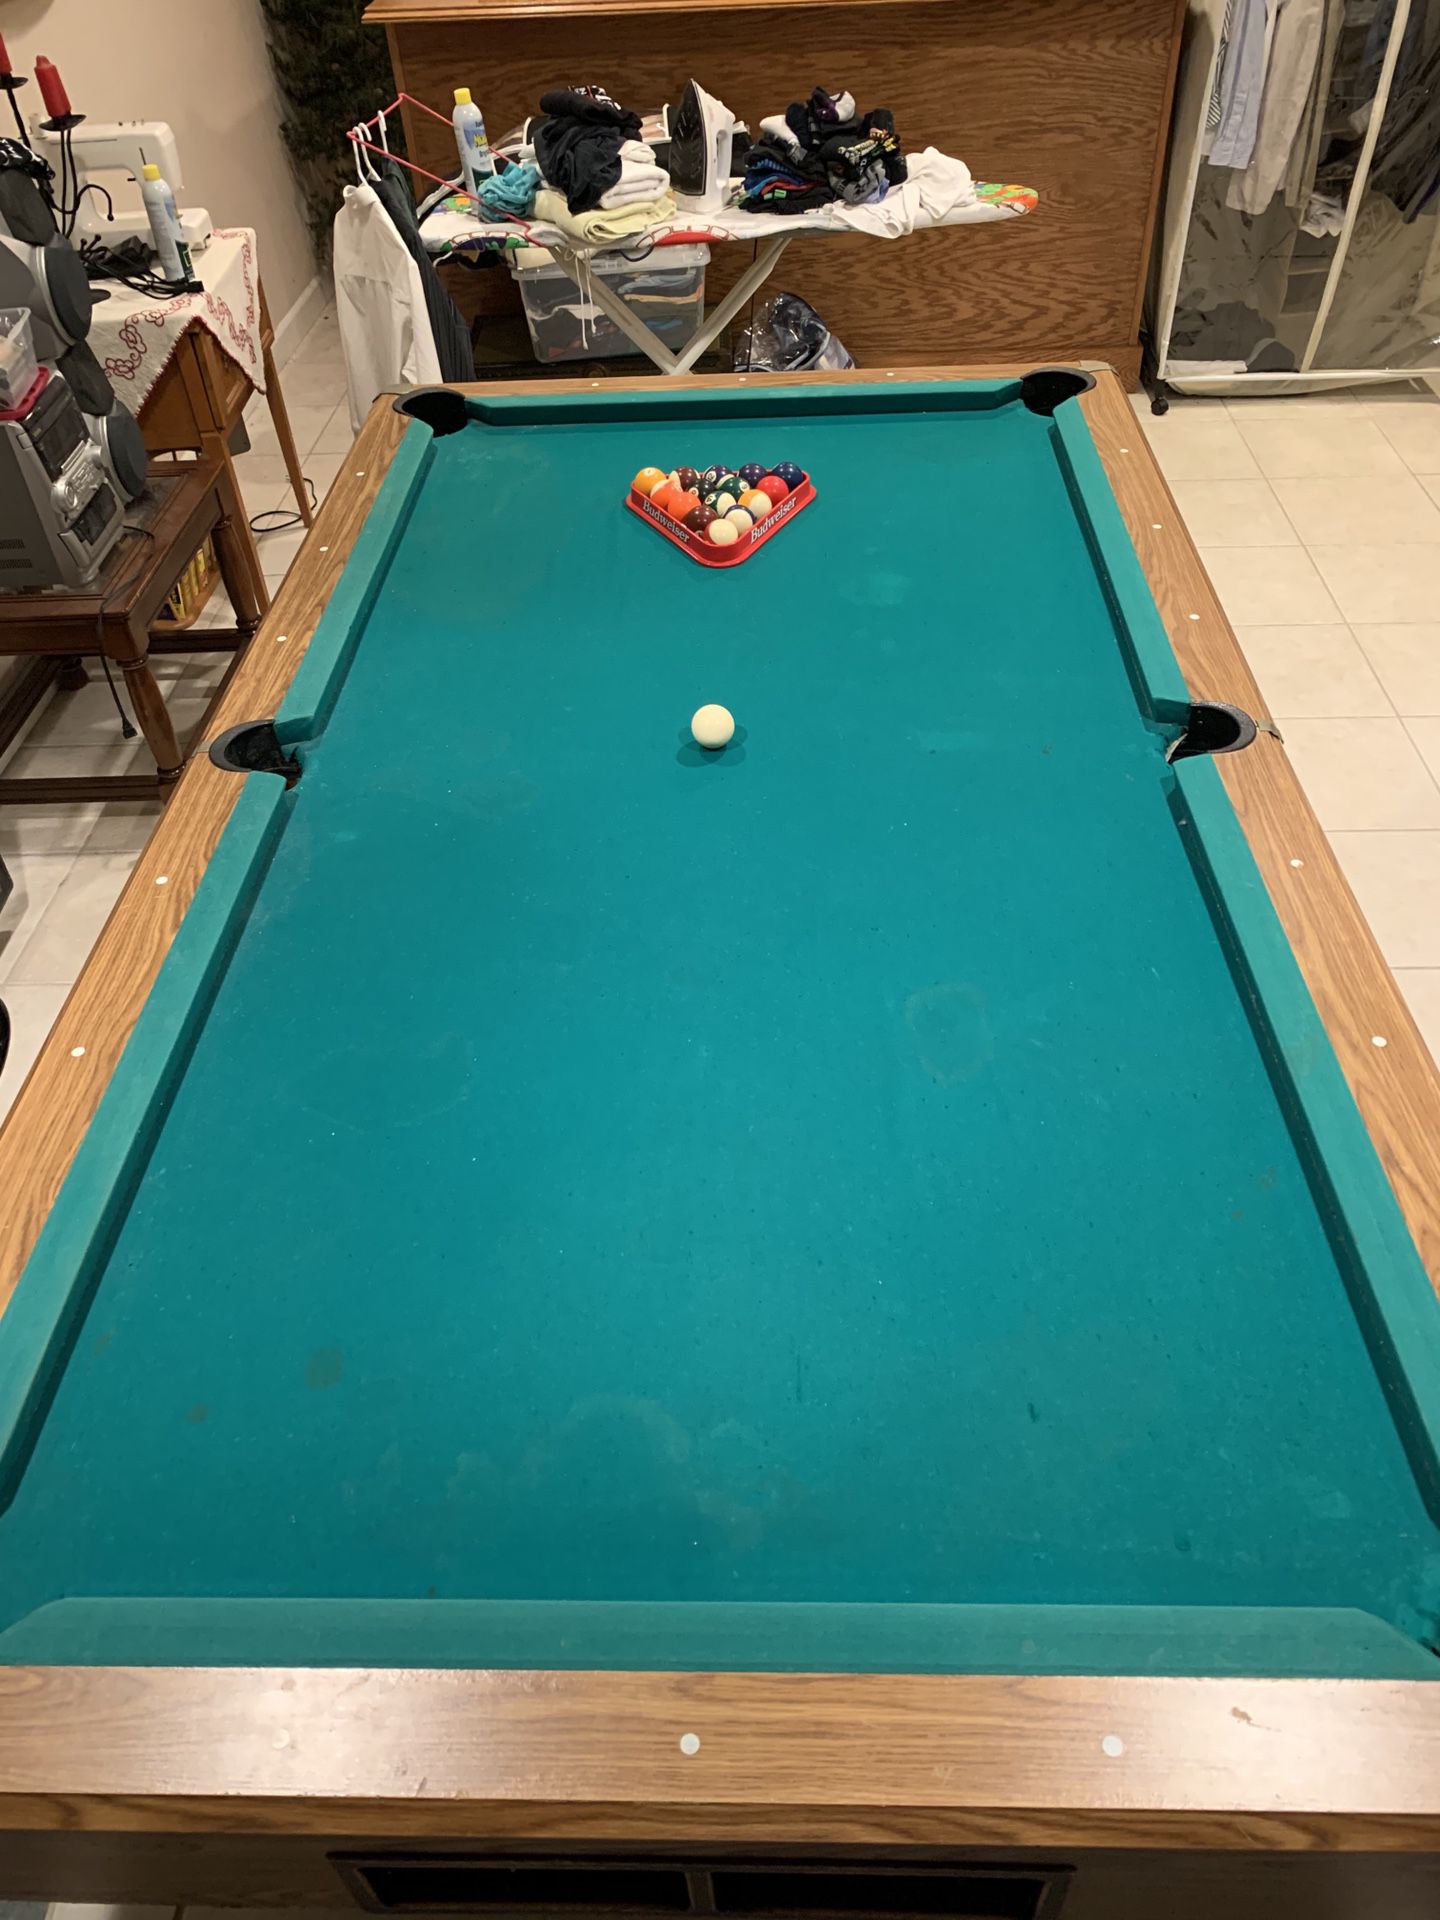 Pool billiards table